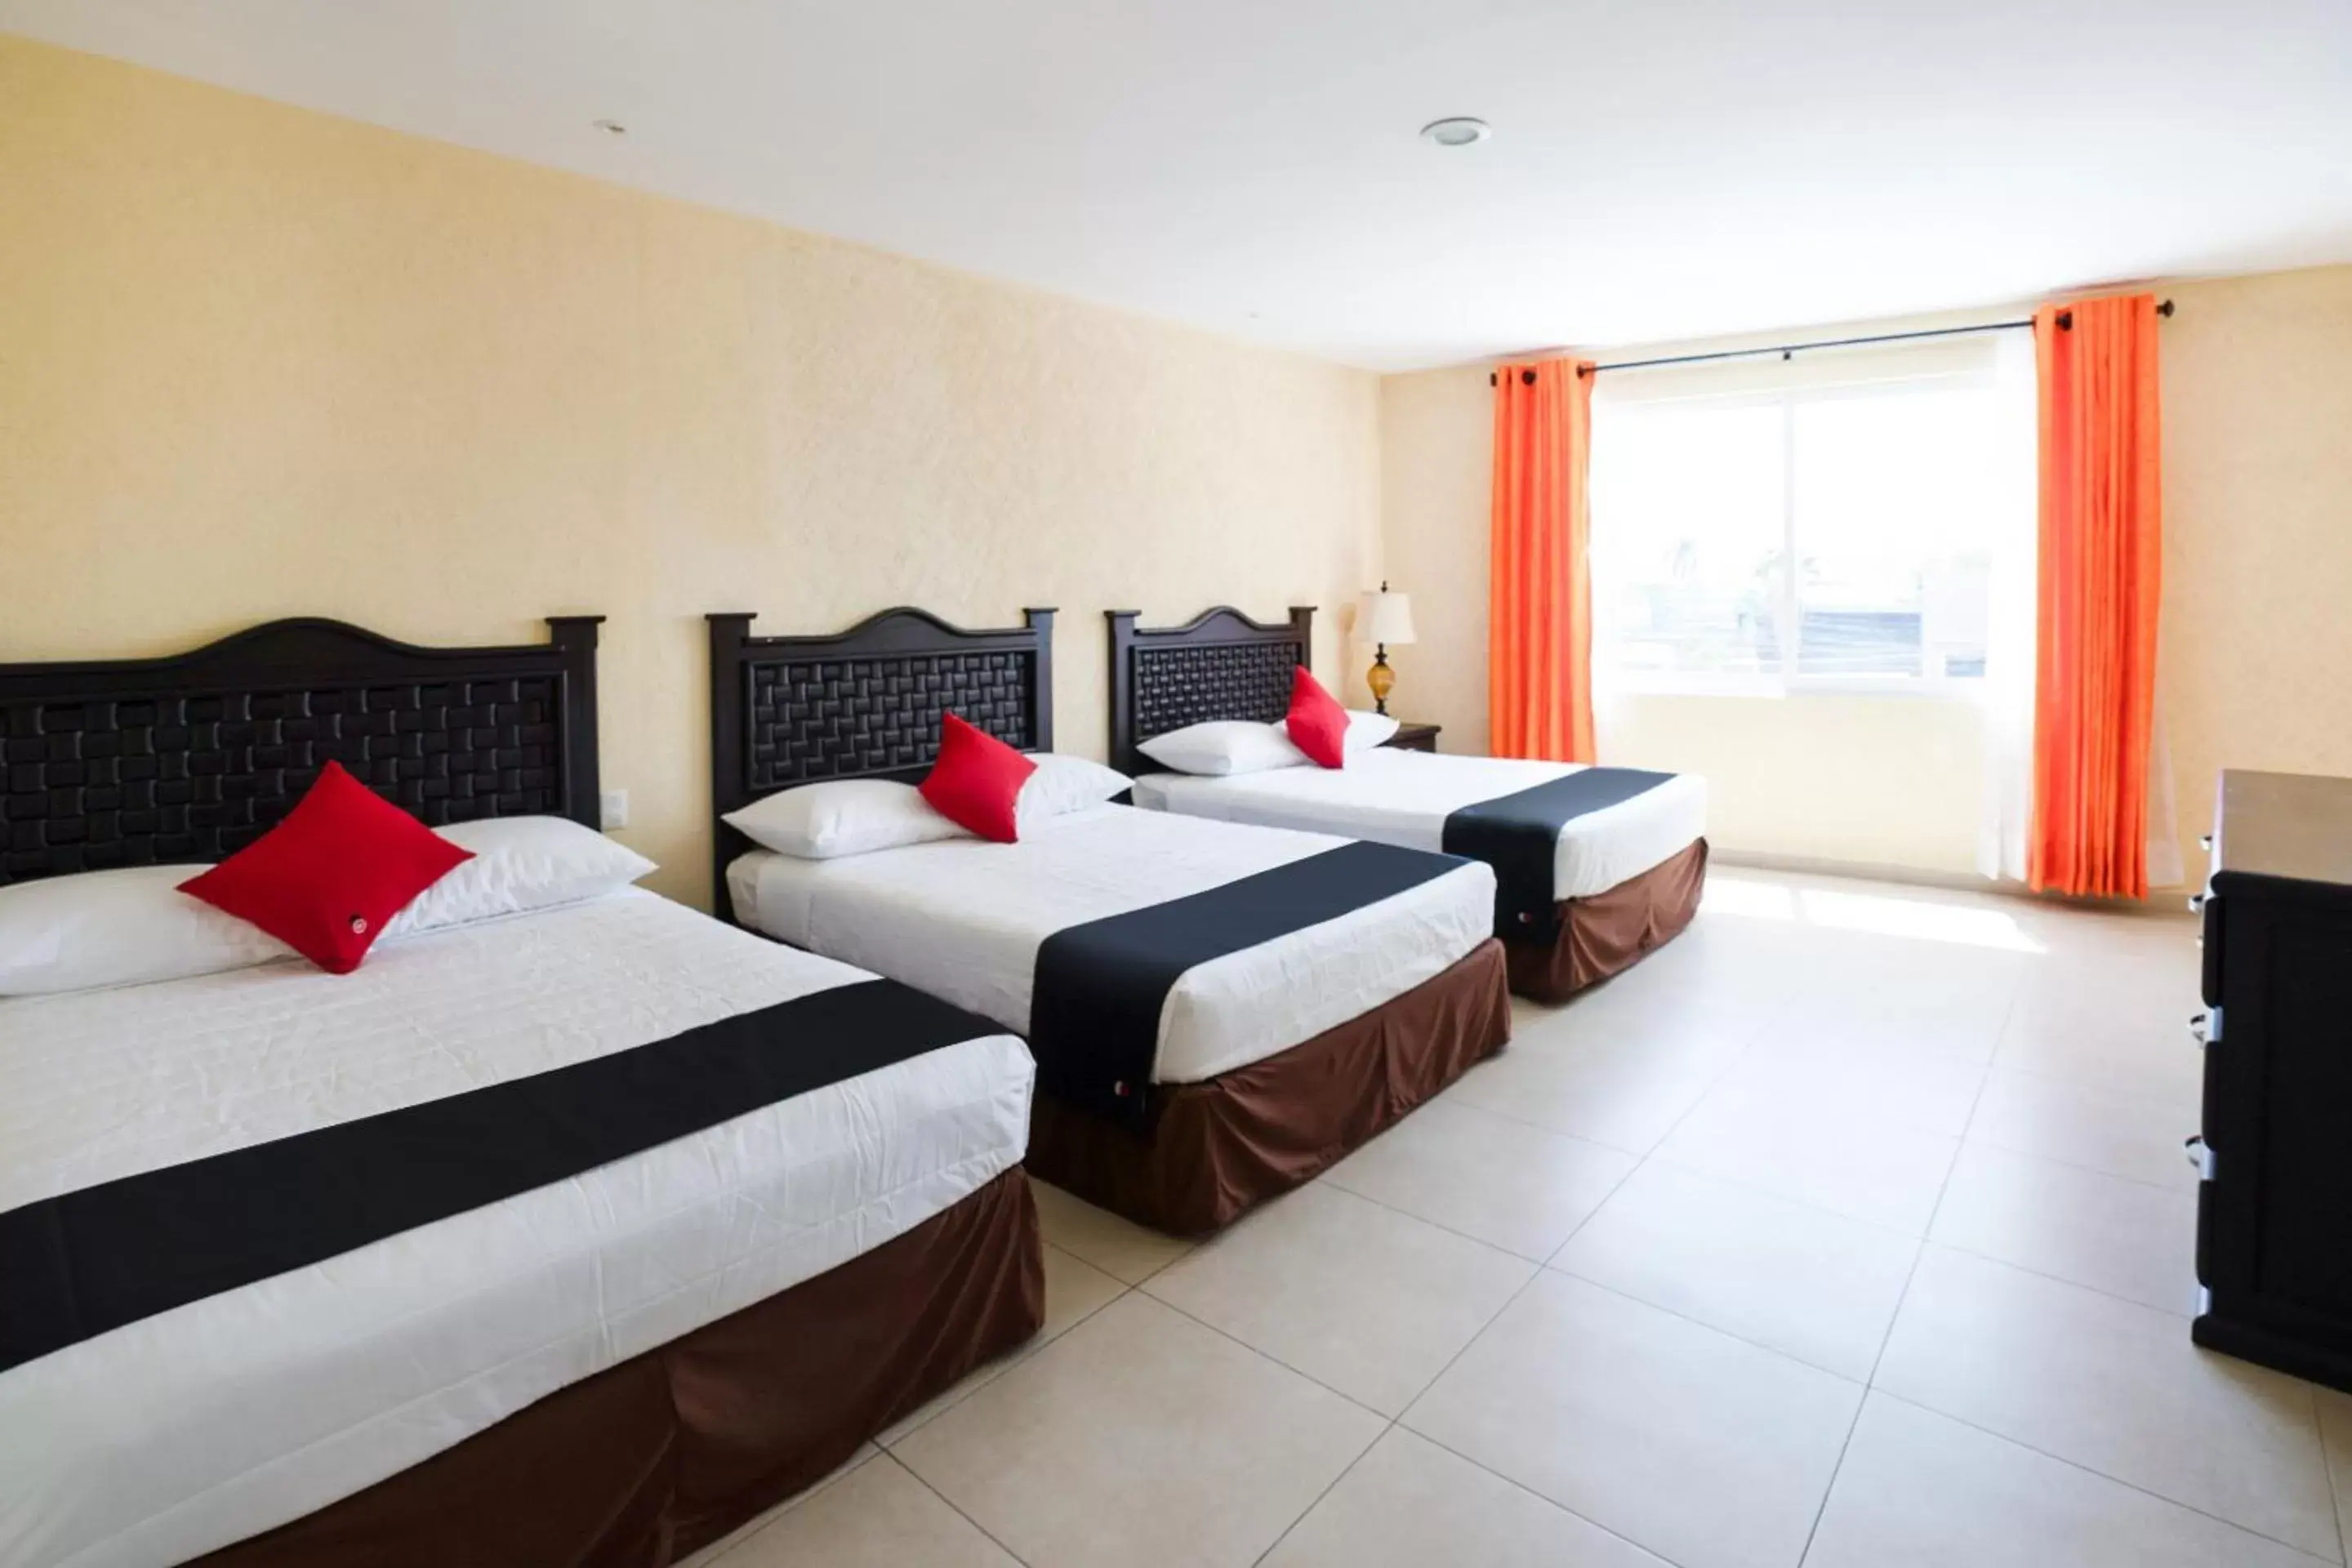 Bedroom, Bed in Capital O Hotel Los Caracoles, Acapulco